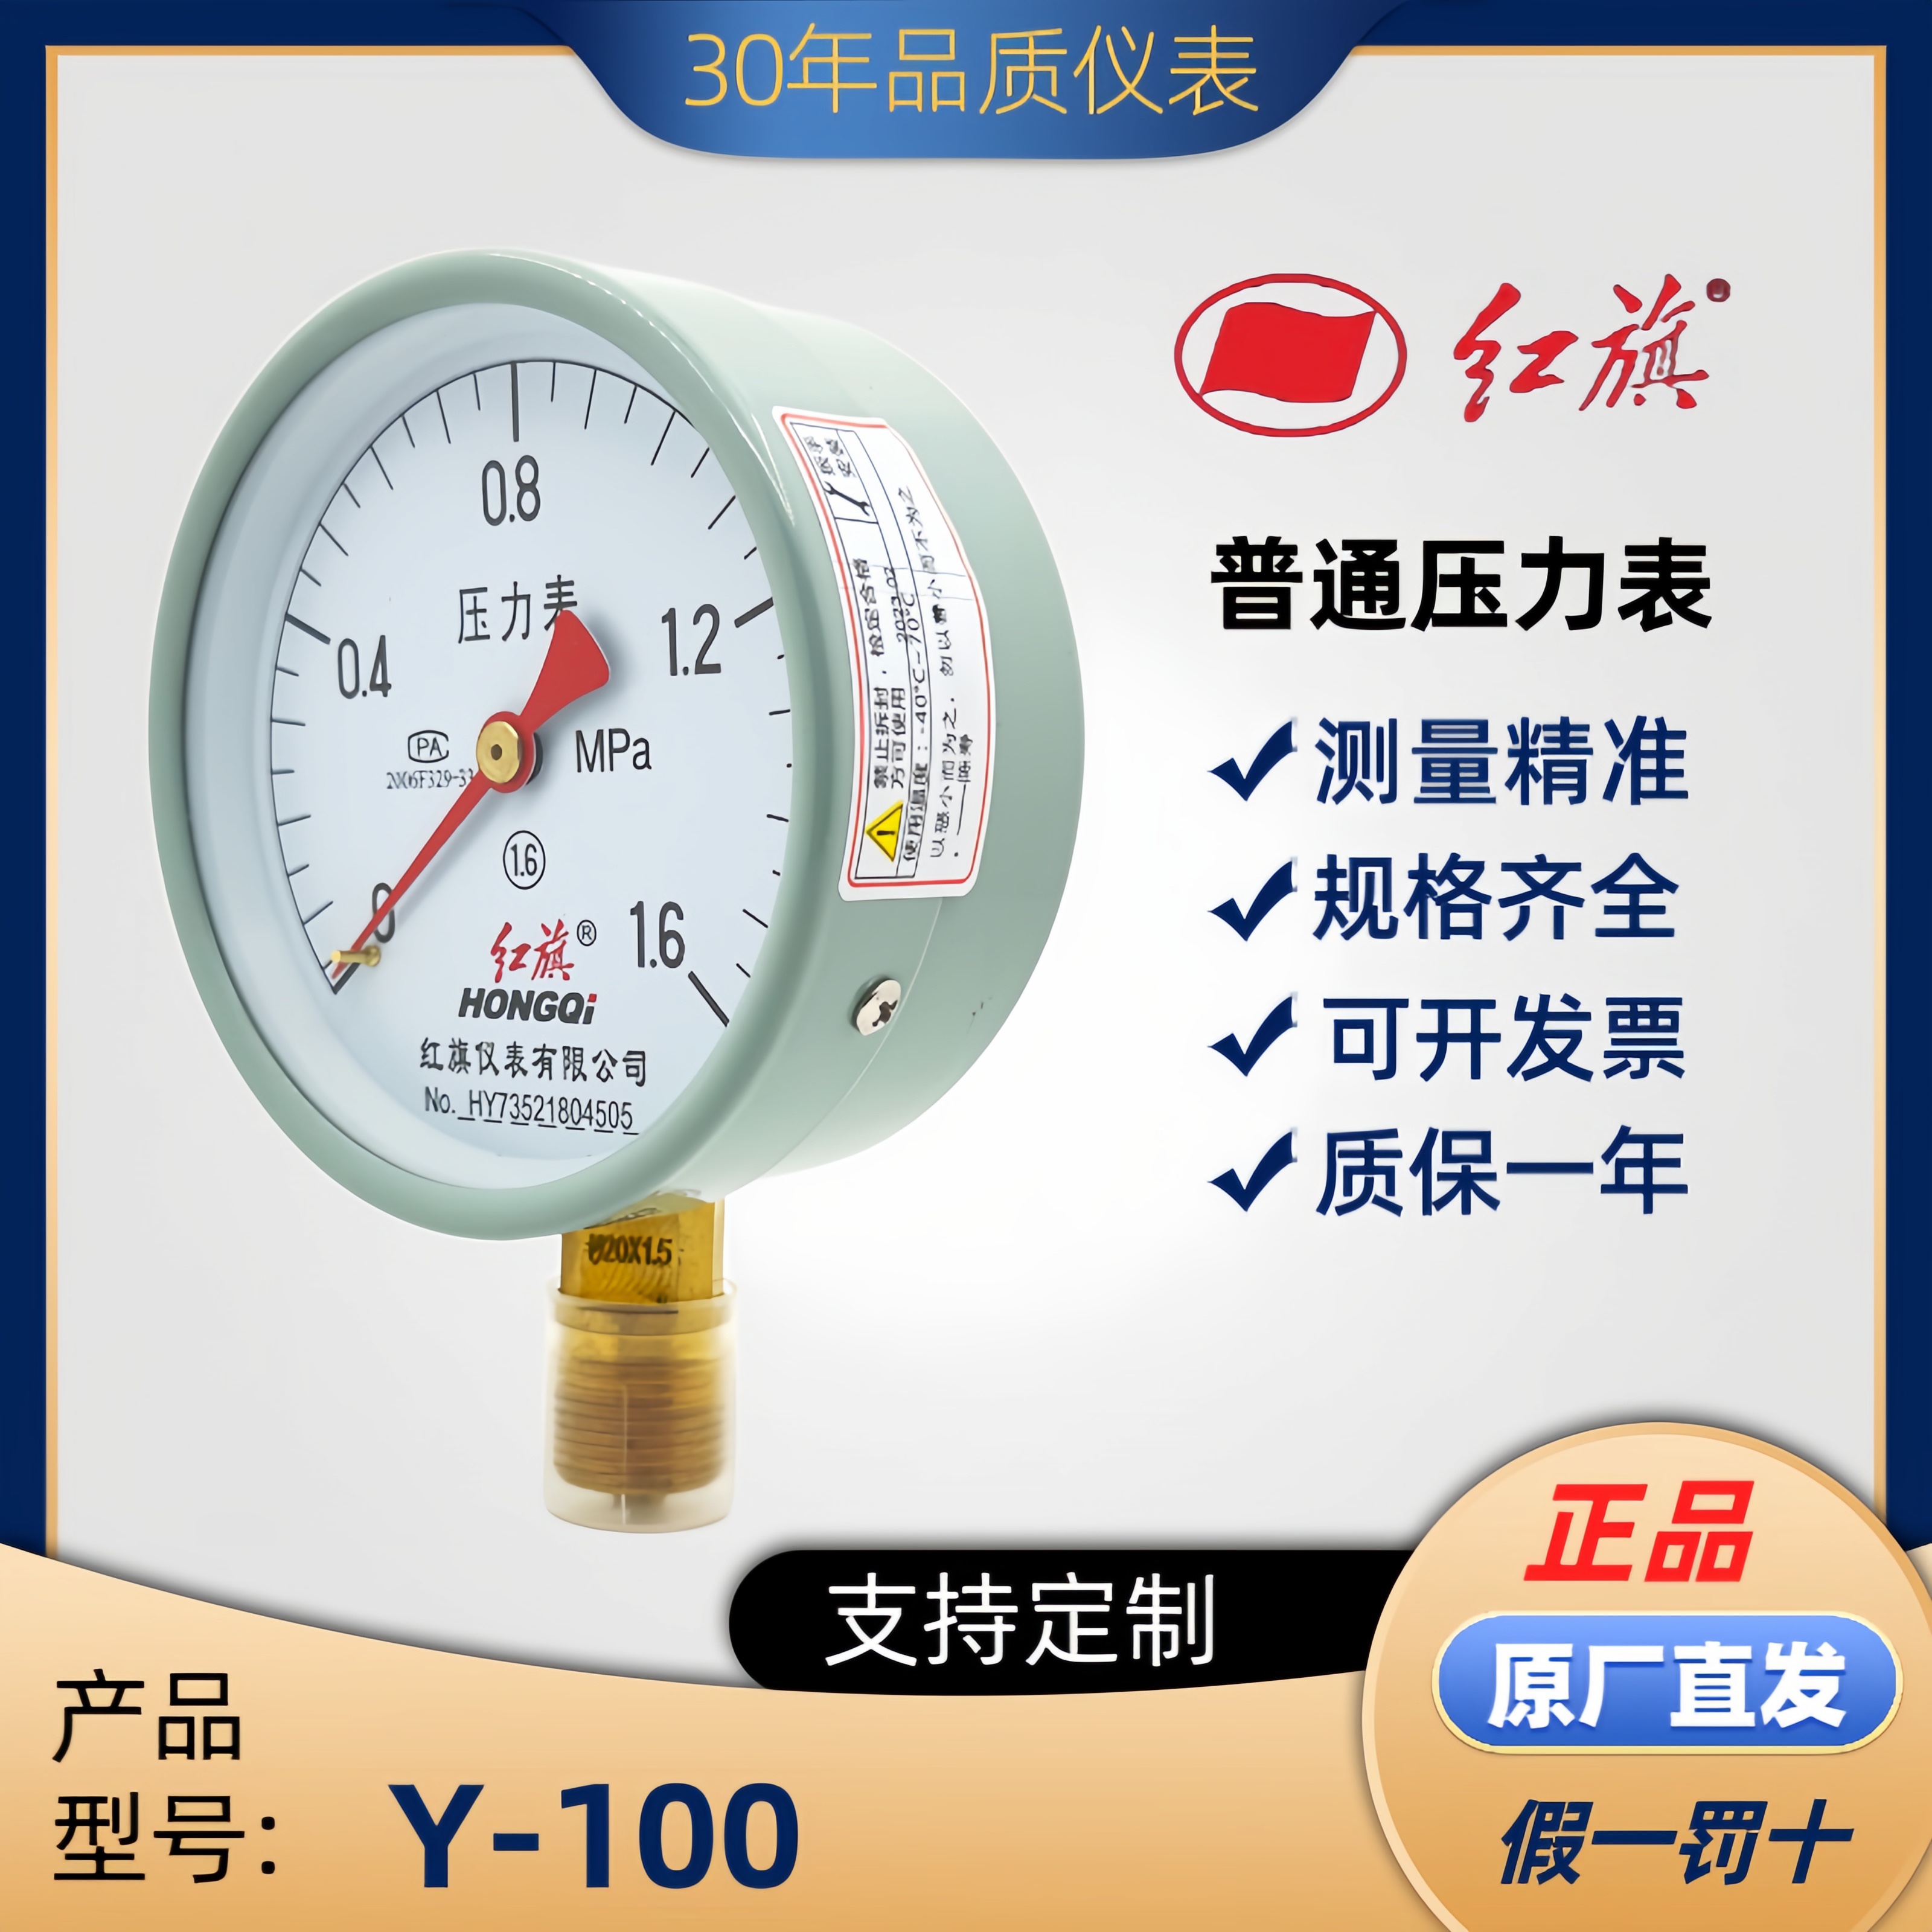 正品中国红旗径向压力表Y100气压表水压表真空表仪器仪表品种齐全